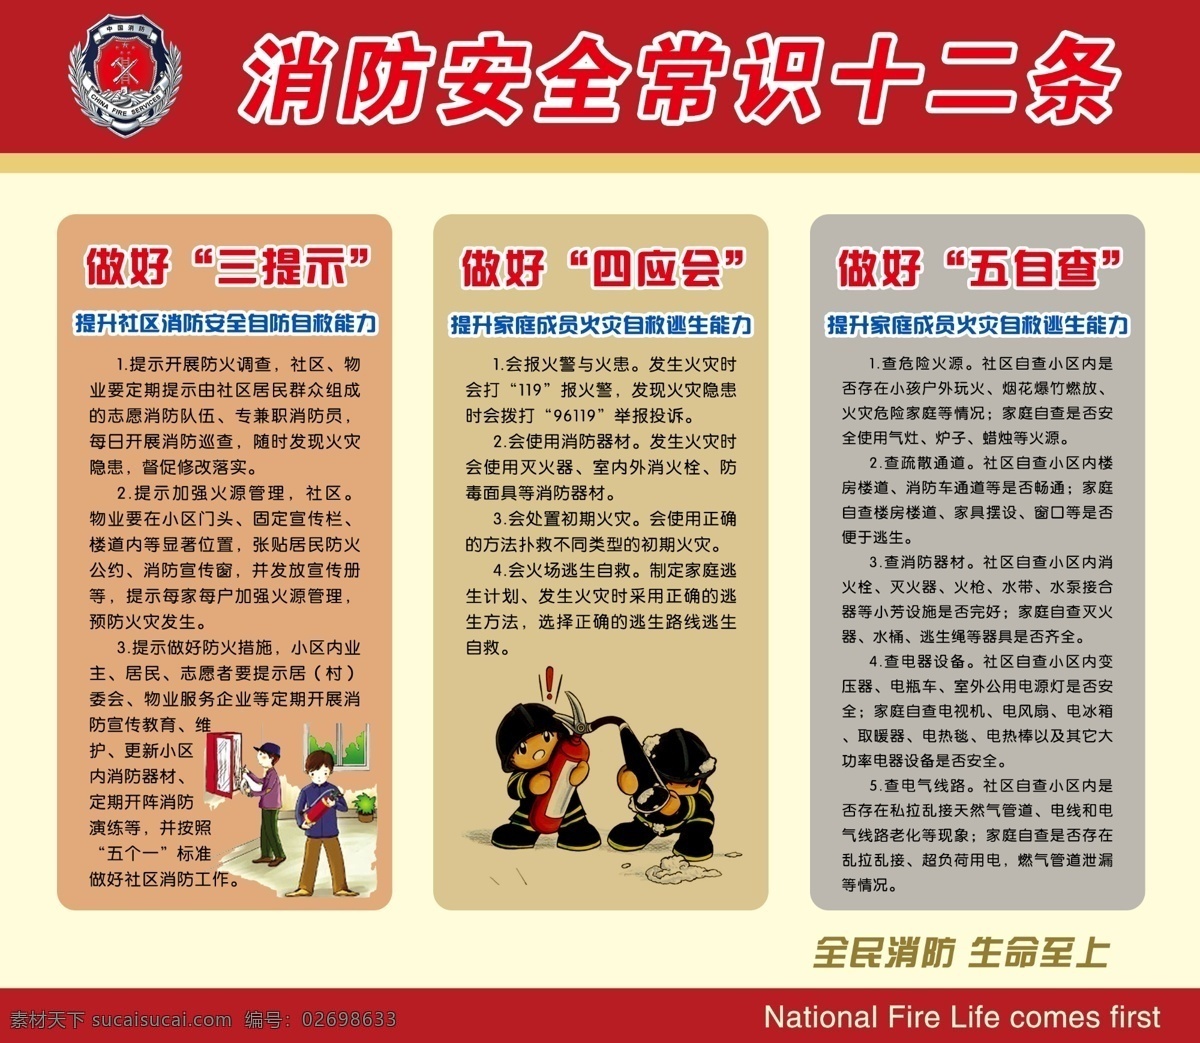 消防 安全 常识 十 二 条 消防安全 消防安全常识 十二条 其他模版 广告设计模板 源文件